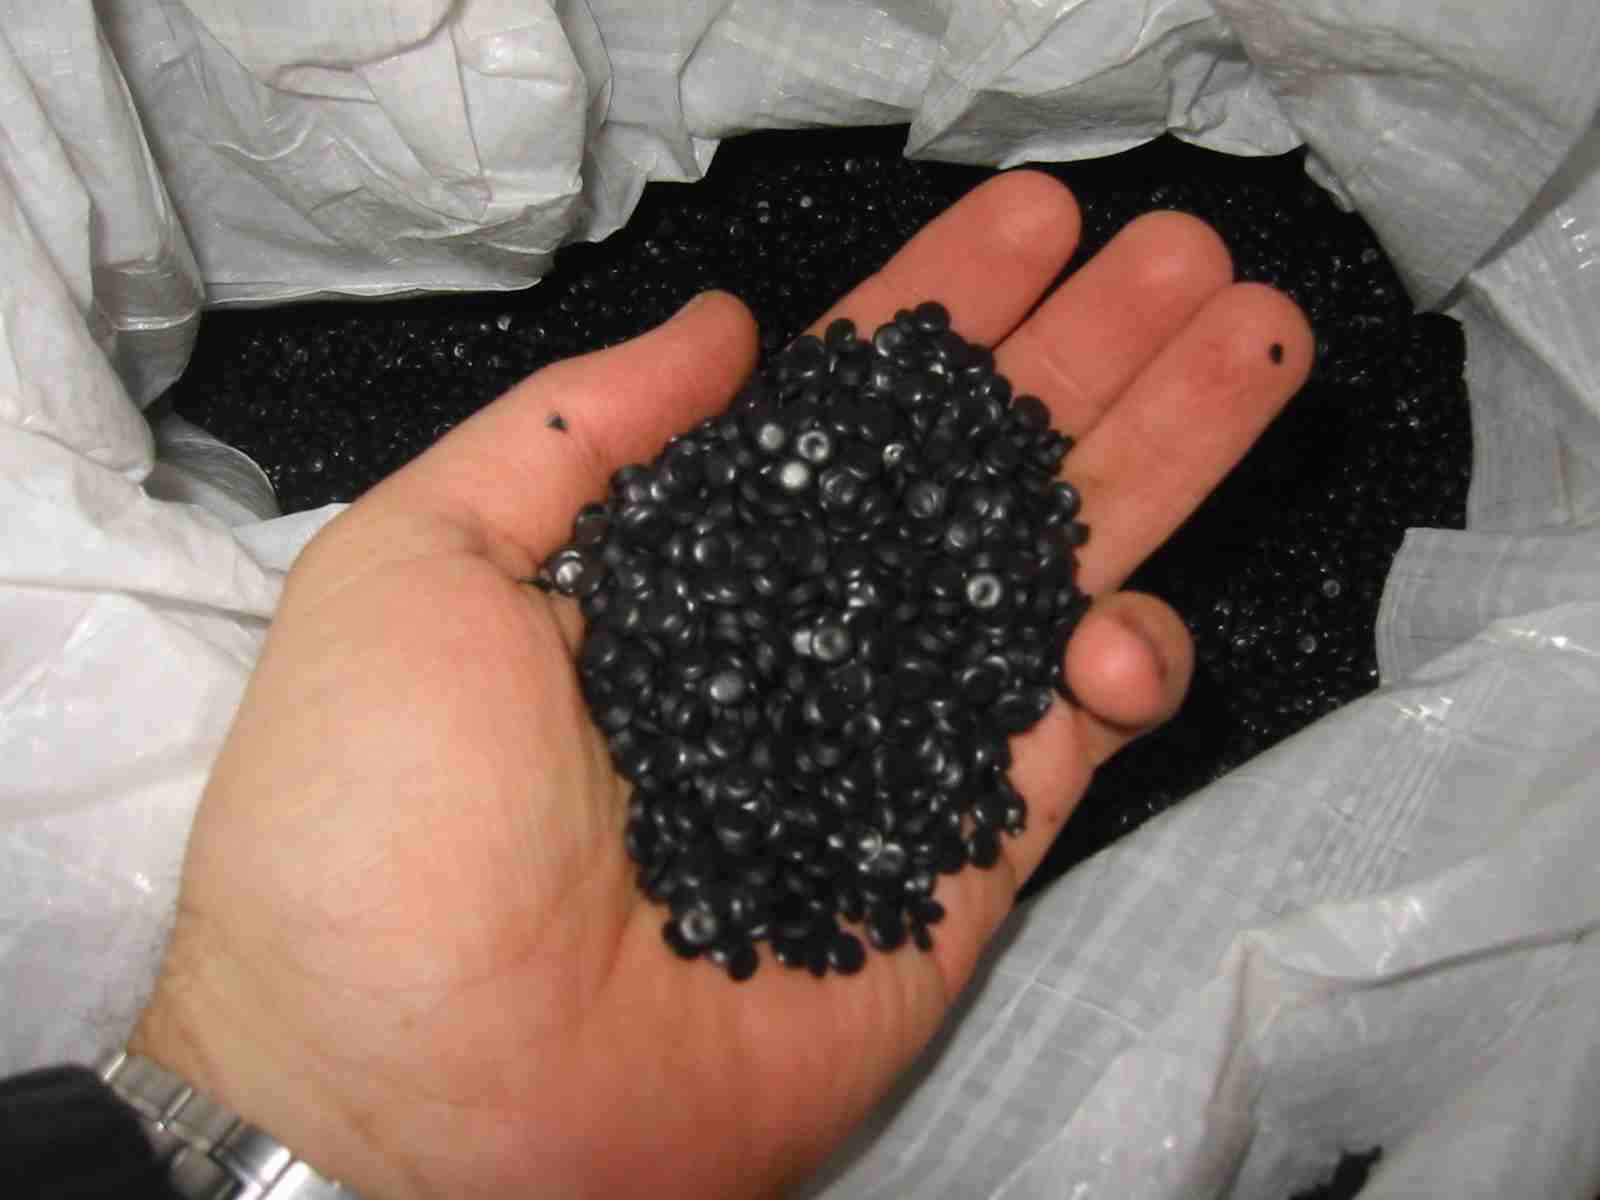 black granules